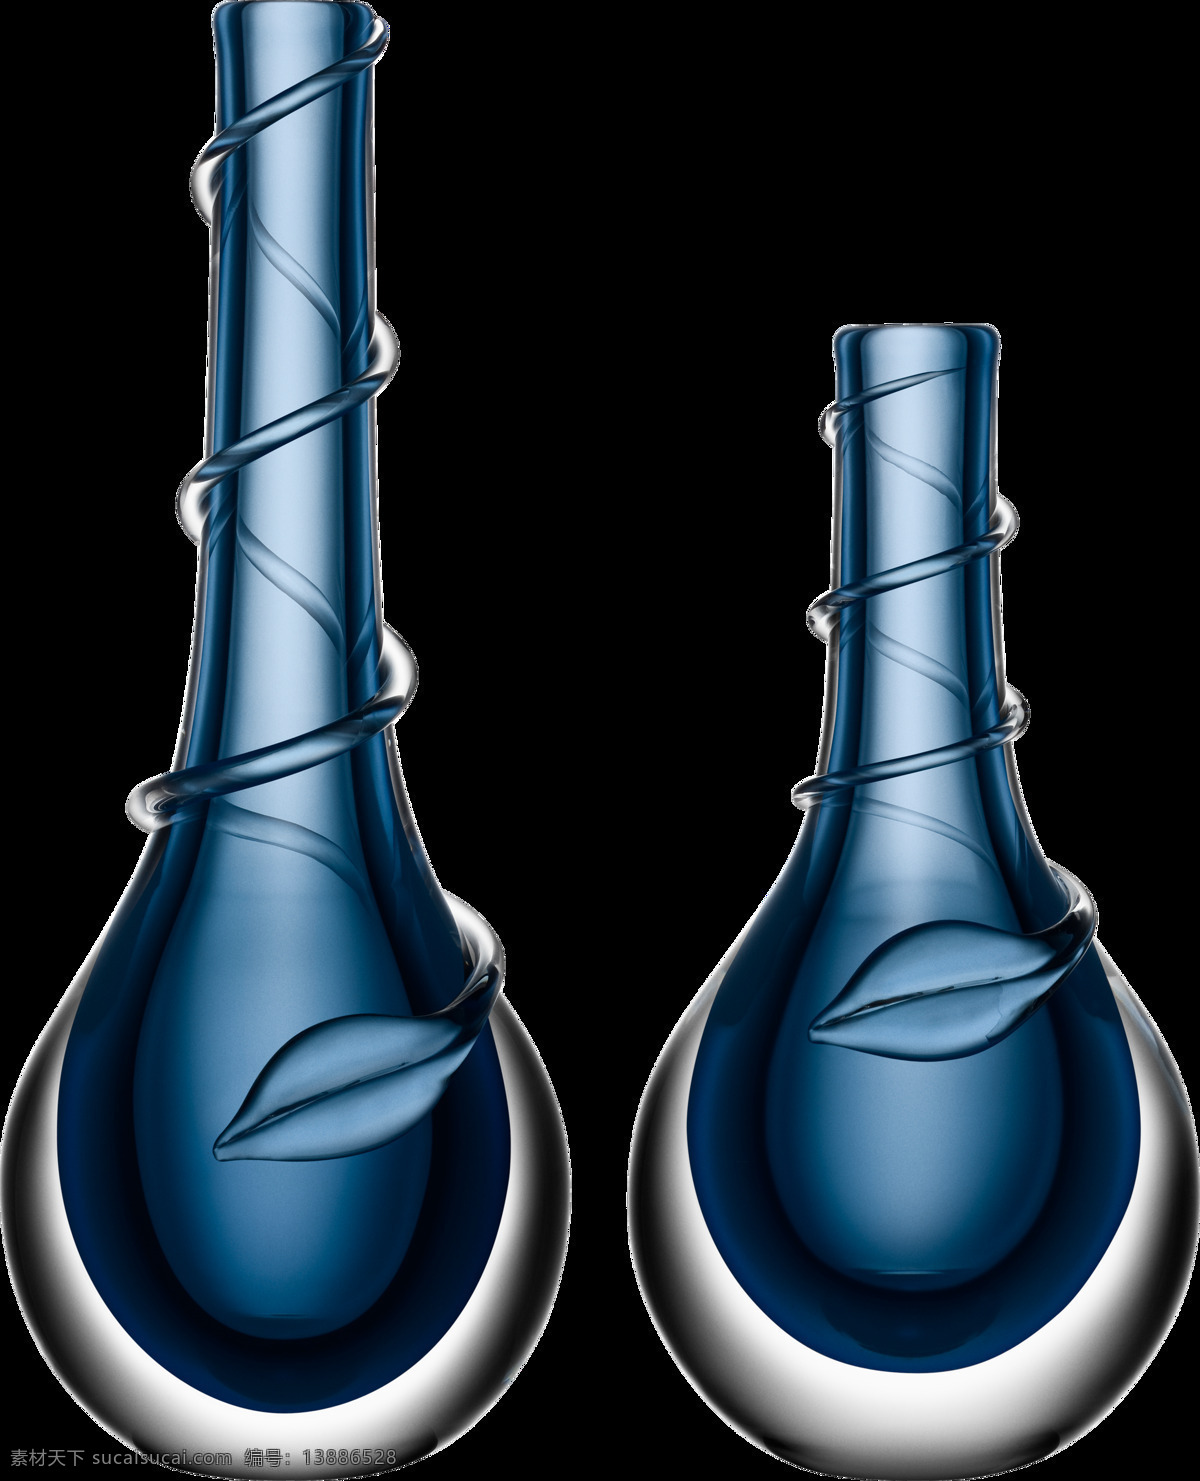 花瓶图片 花瓶 瓷瓶 瓶子 陶瓶 陶瓷 瓶 瓷器 陶器 玻璃瓶 文物 装饰摆设 装饰 摆设 png图 透明图 免扣图 透明背景 透明底 抠图